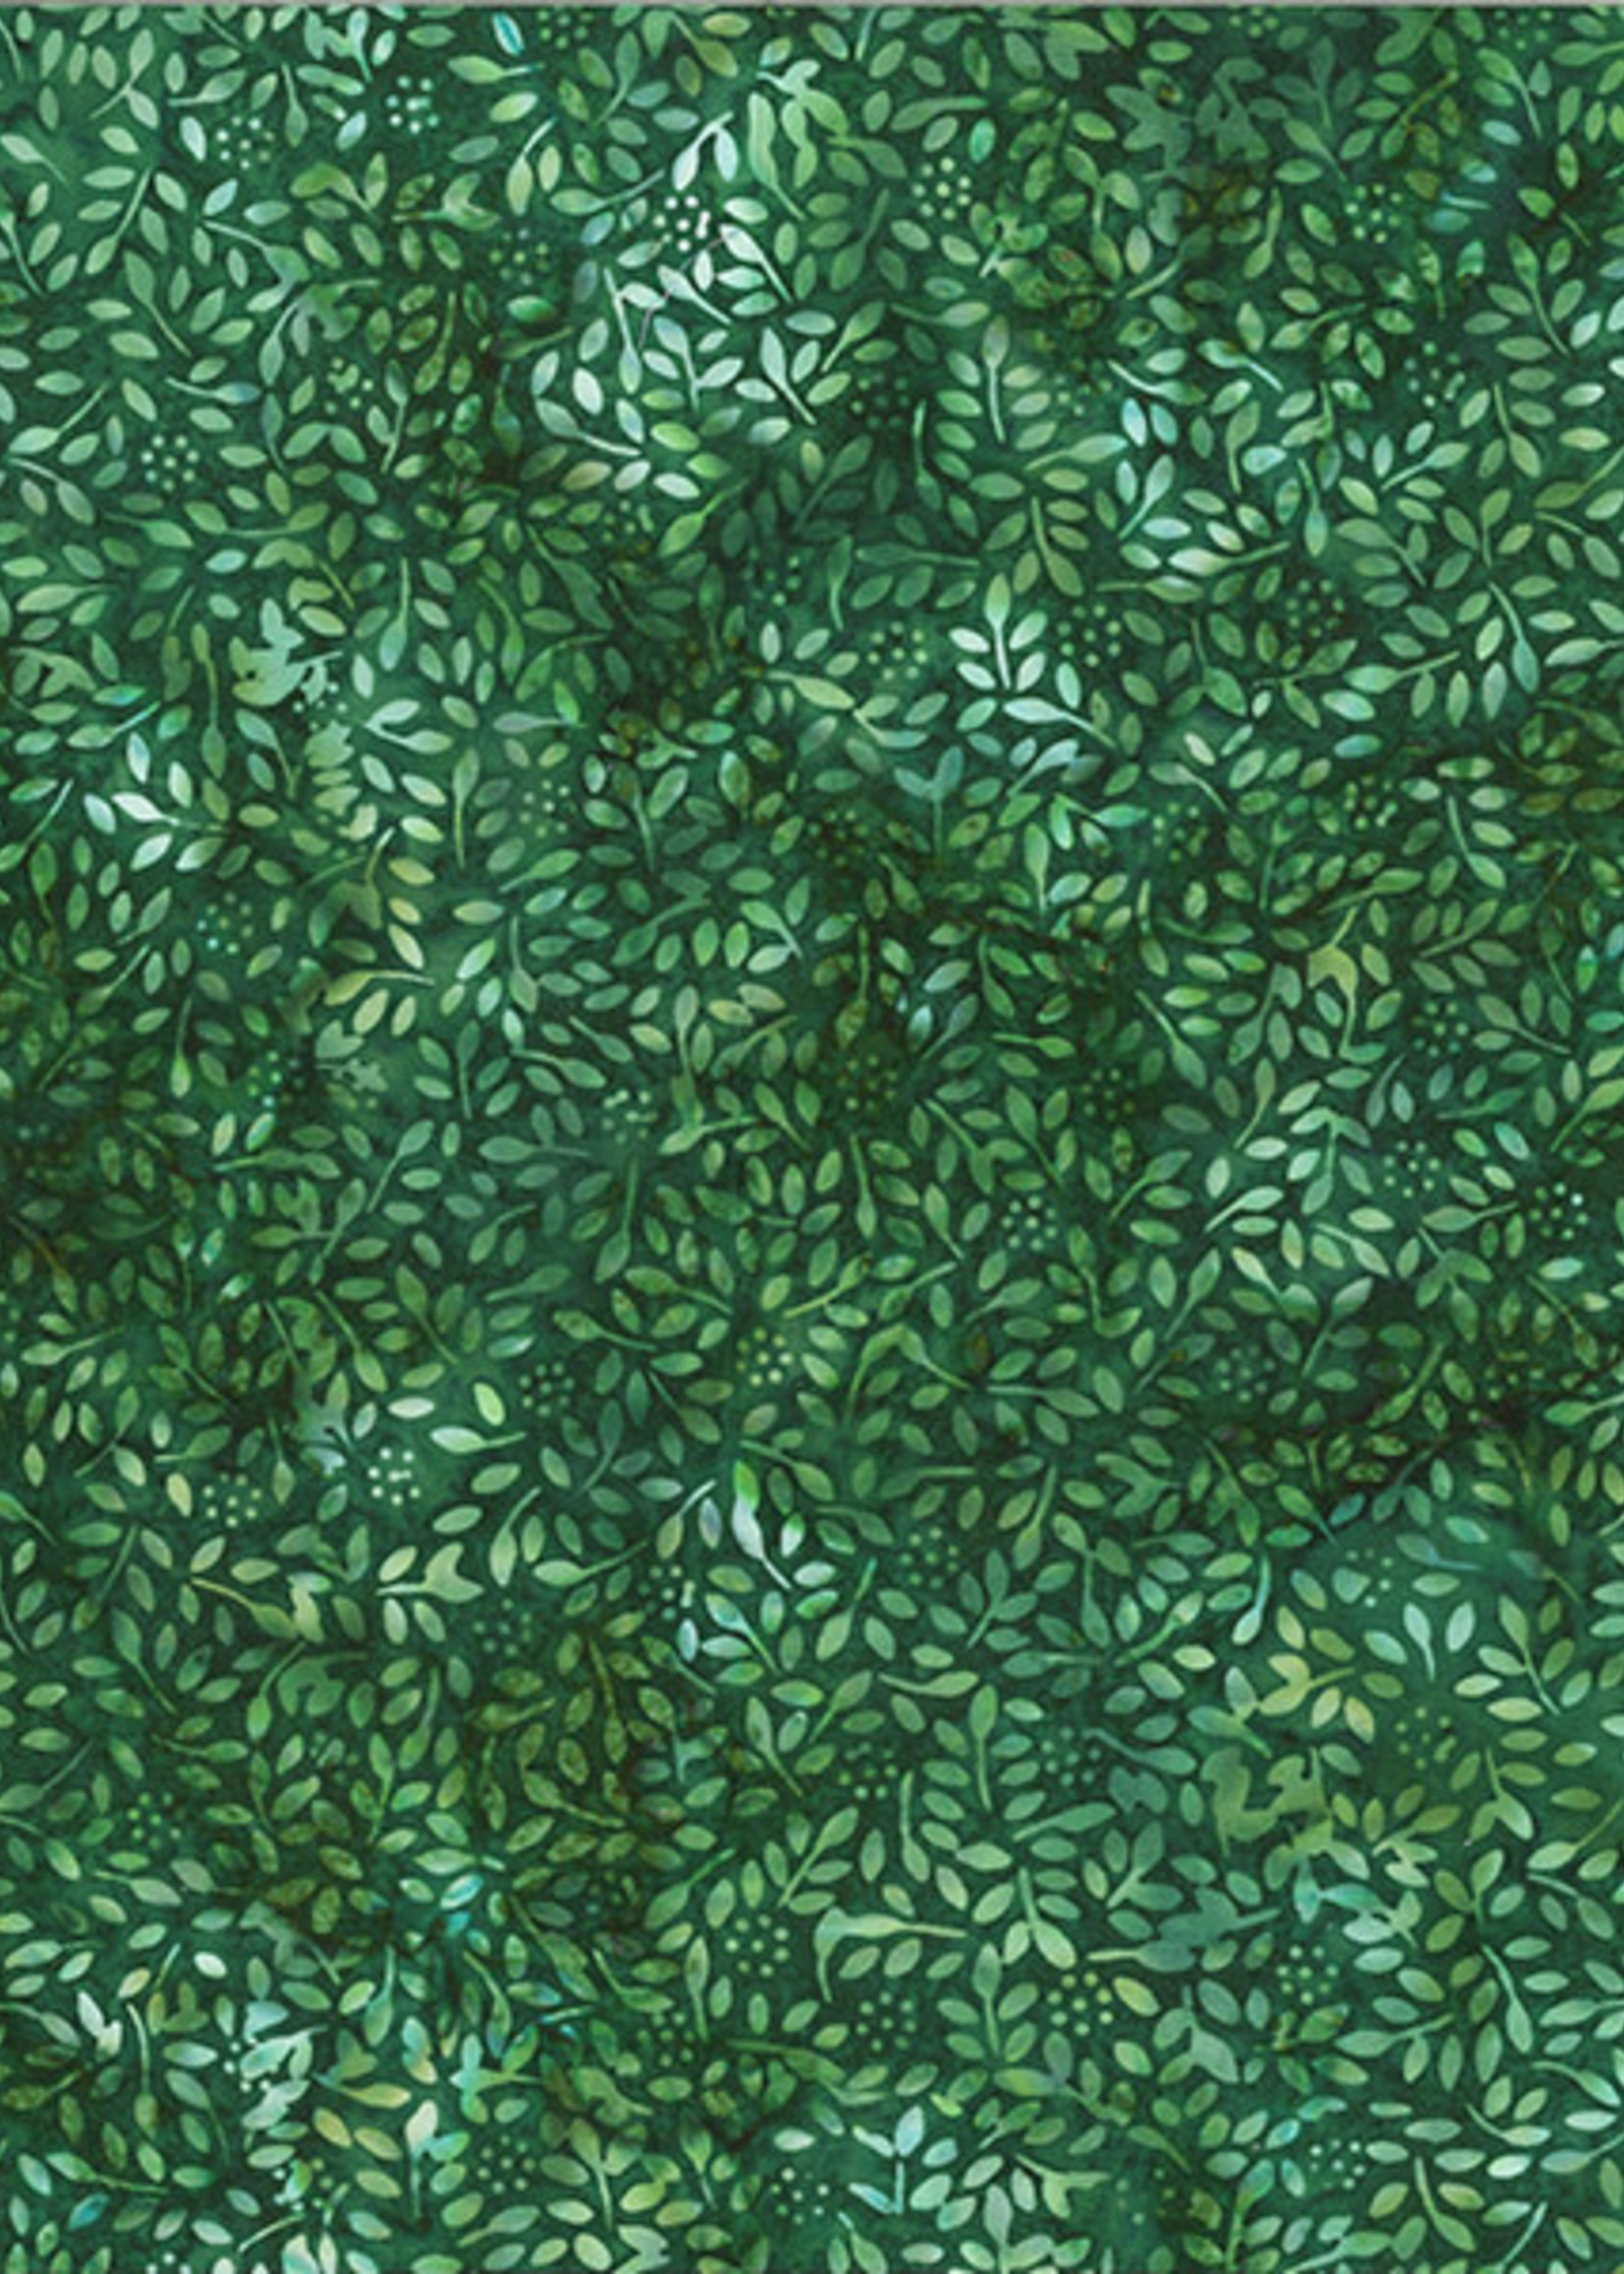 Hoffman Fabrics Bali Batik Leaves and Dots 2319 - 178 Leaf